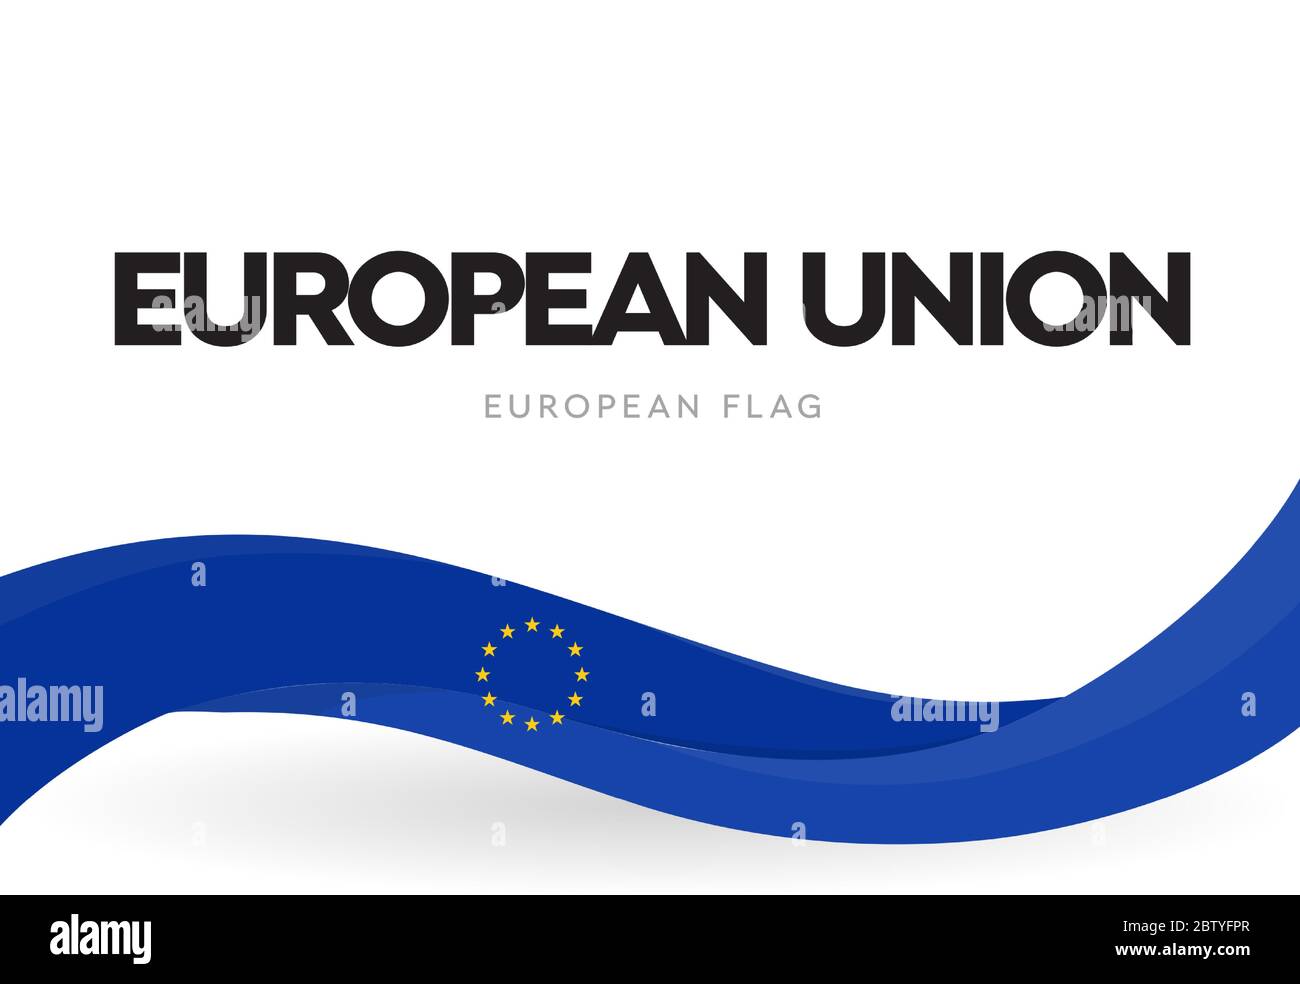 Drapeau de l'Union européenne. Symbole distinctif de l'UE. Ruban patriotique bleu Europe avec affiche étoiles. Brochure de la Communauté économique européenne Illustration de Vecteur